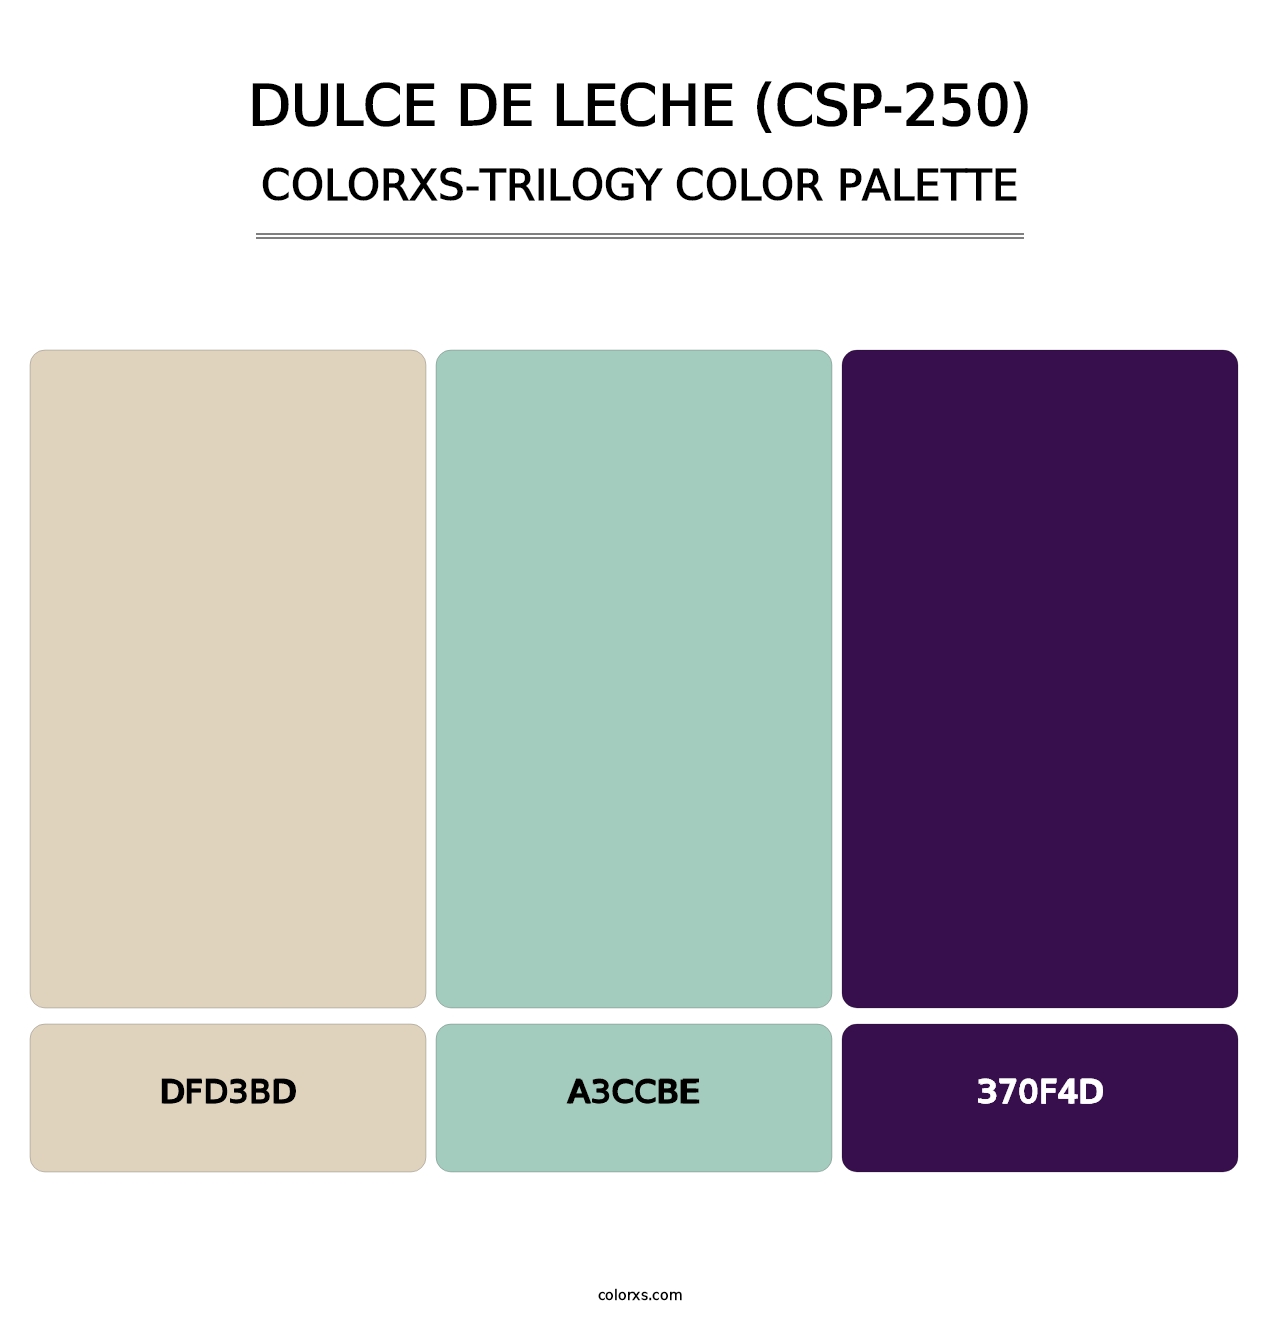 Dulce de Leche (CSP-250) - Colorxs Trilogy Palette